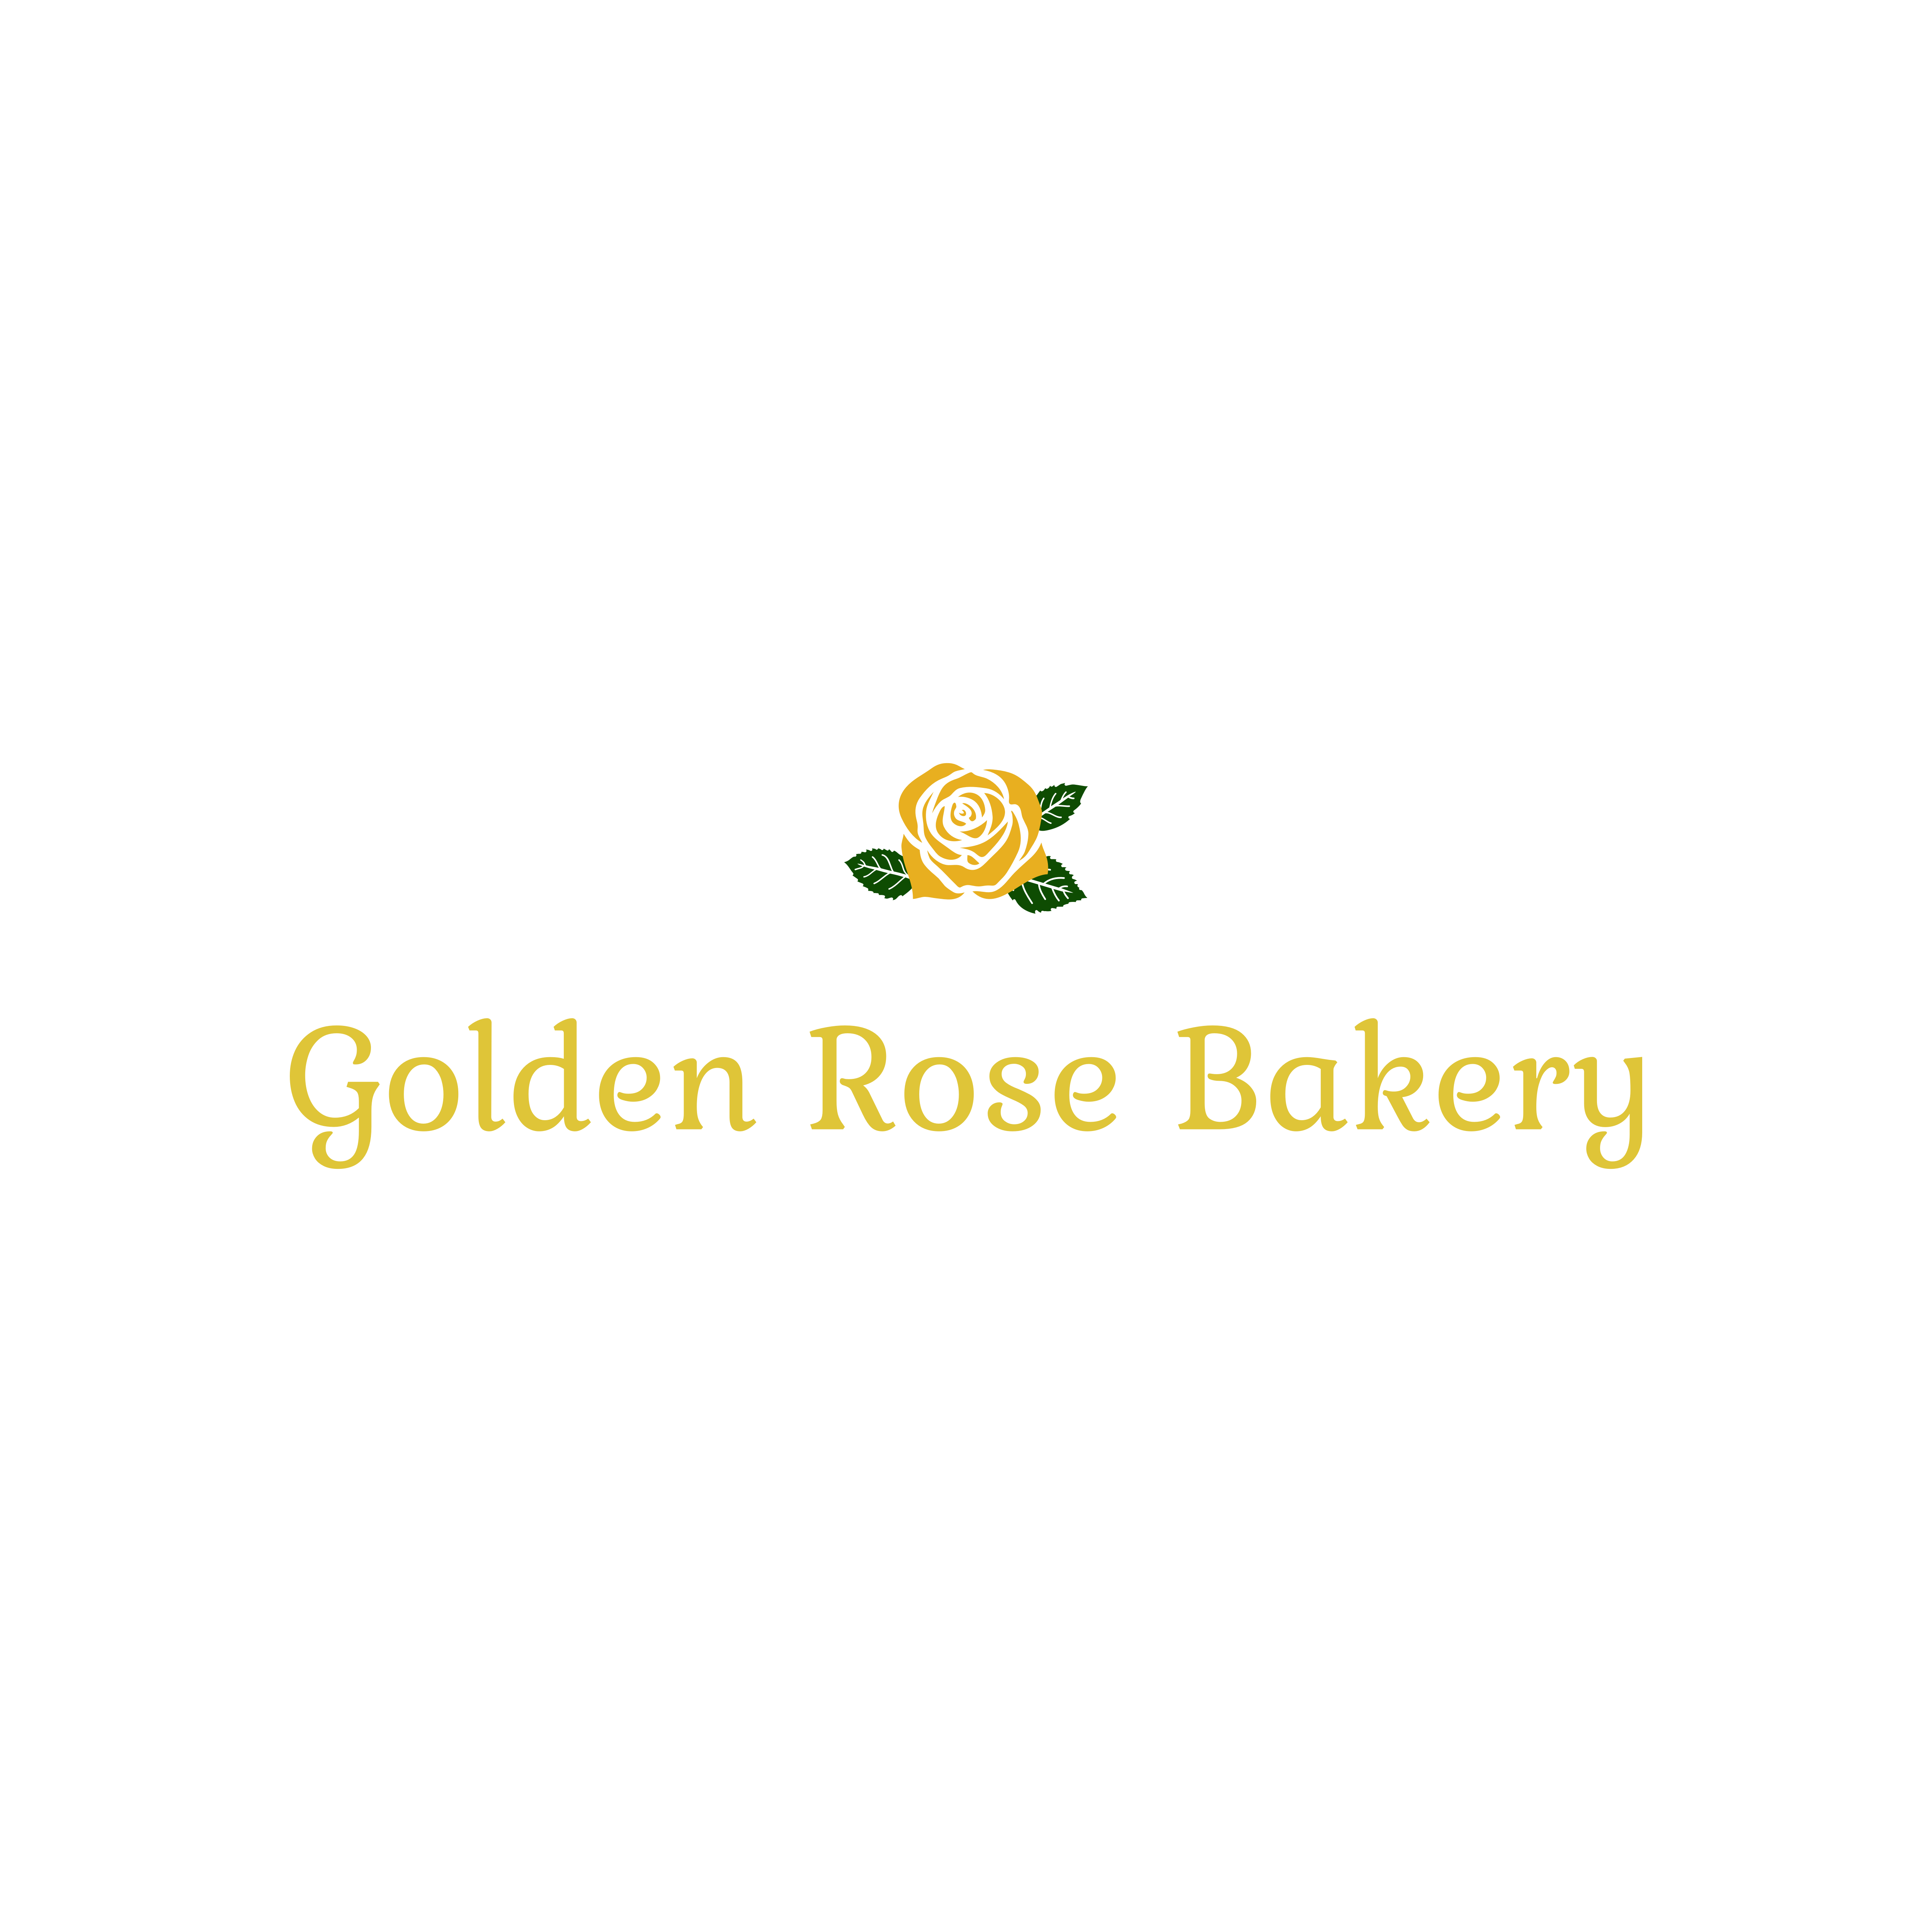 Golden Rose Bakery